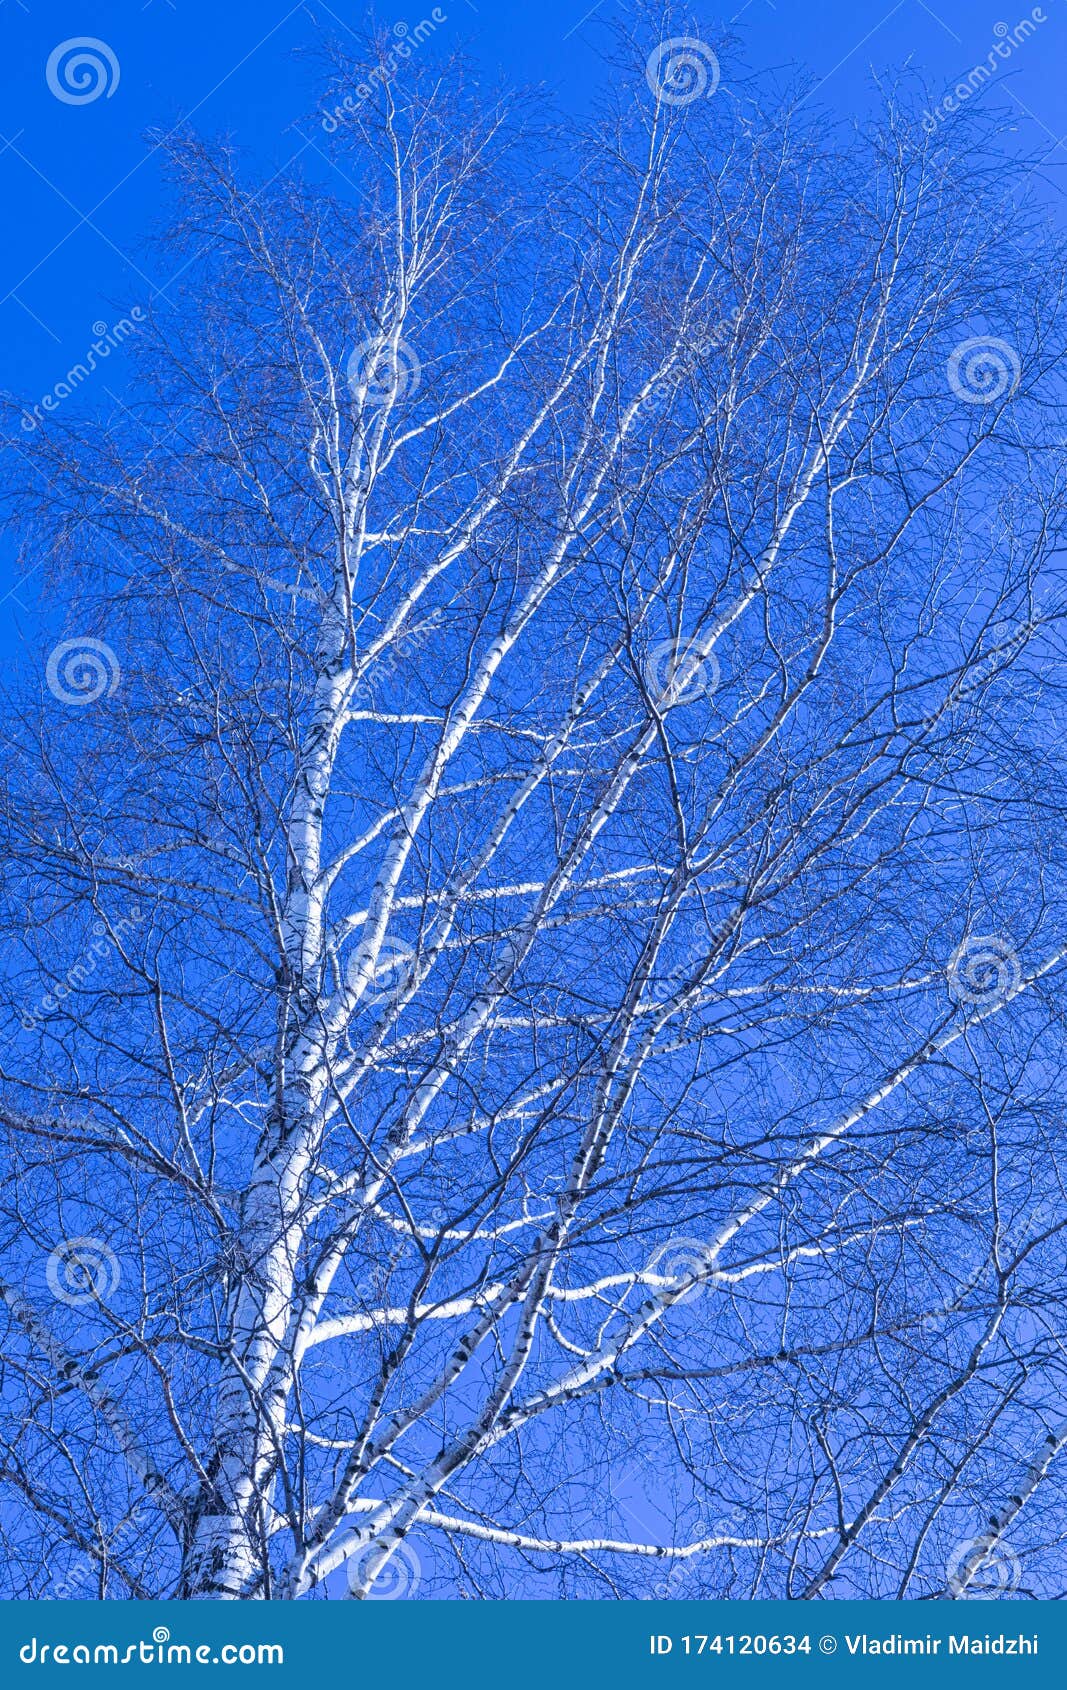 Березка 26. Березы на фоне голубого неба. Берёза дерево на фоне синего неба. Берёзы небо зима. Берёзы смотрят в небо зима фото.